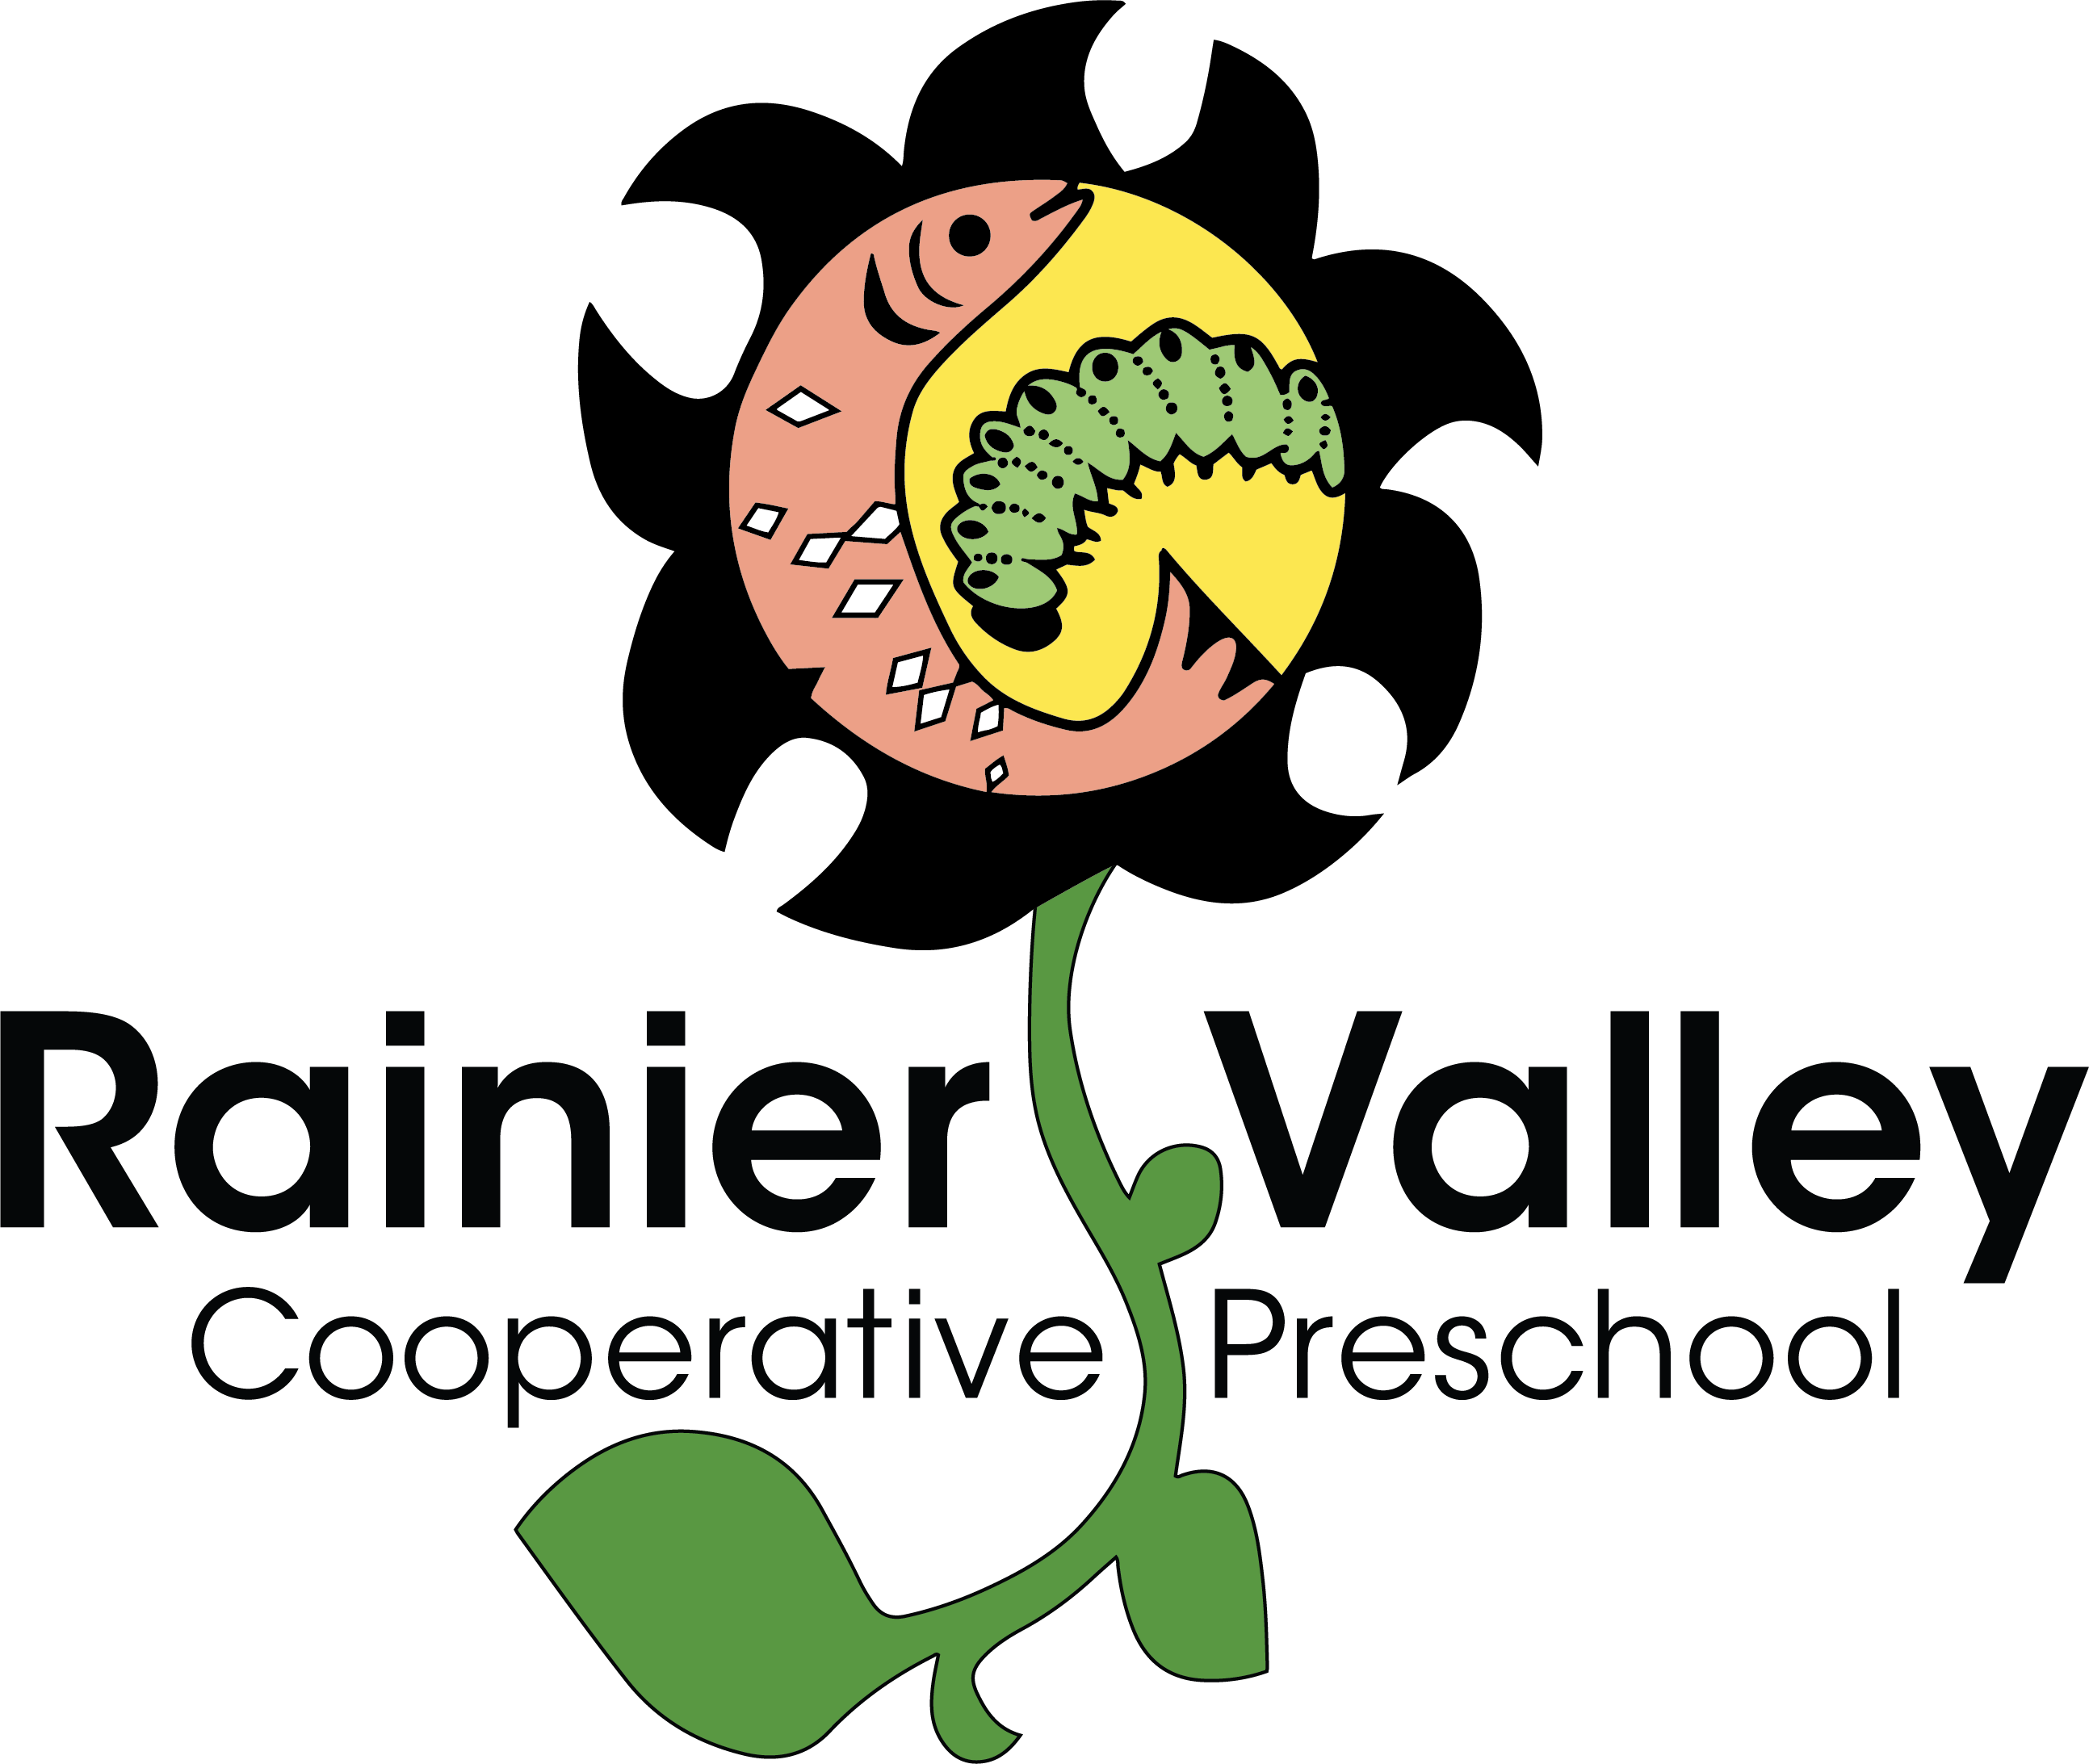 Rainier Valley Cooperative Preschool